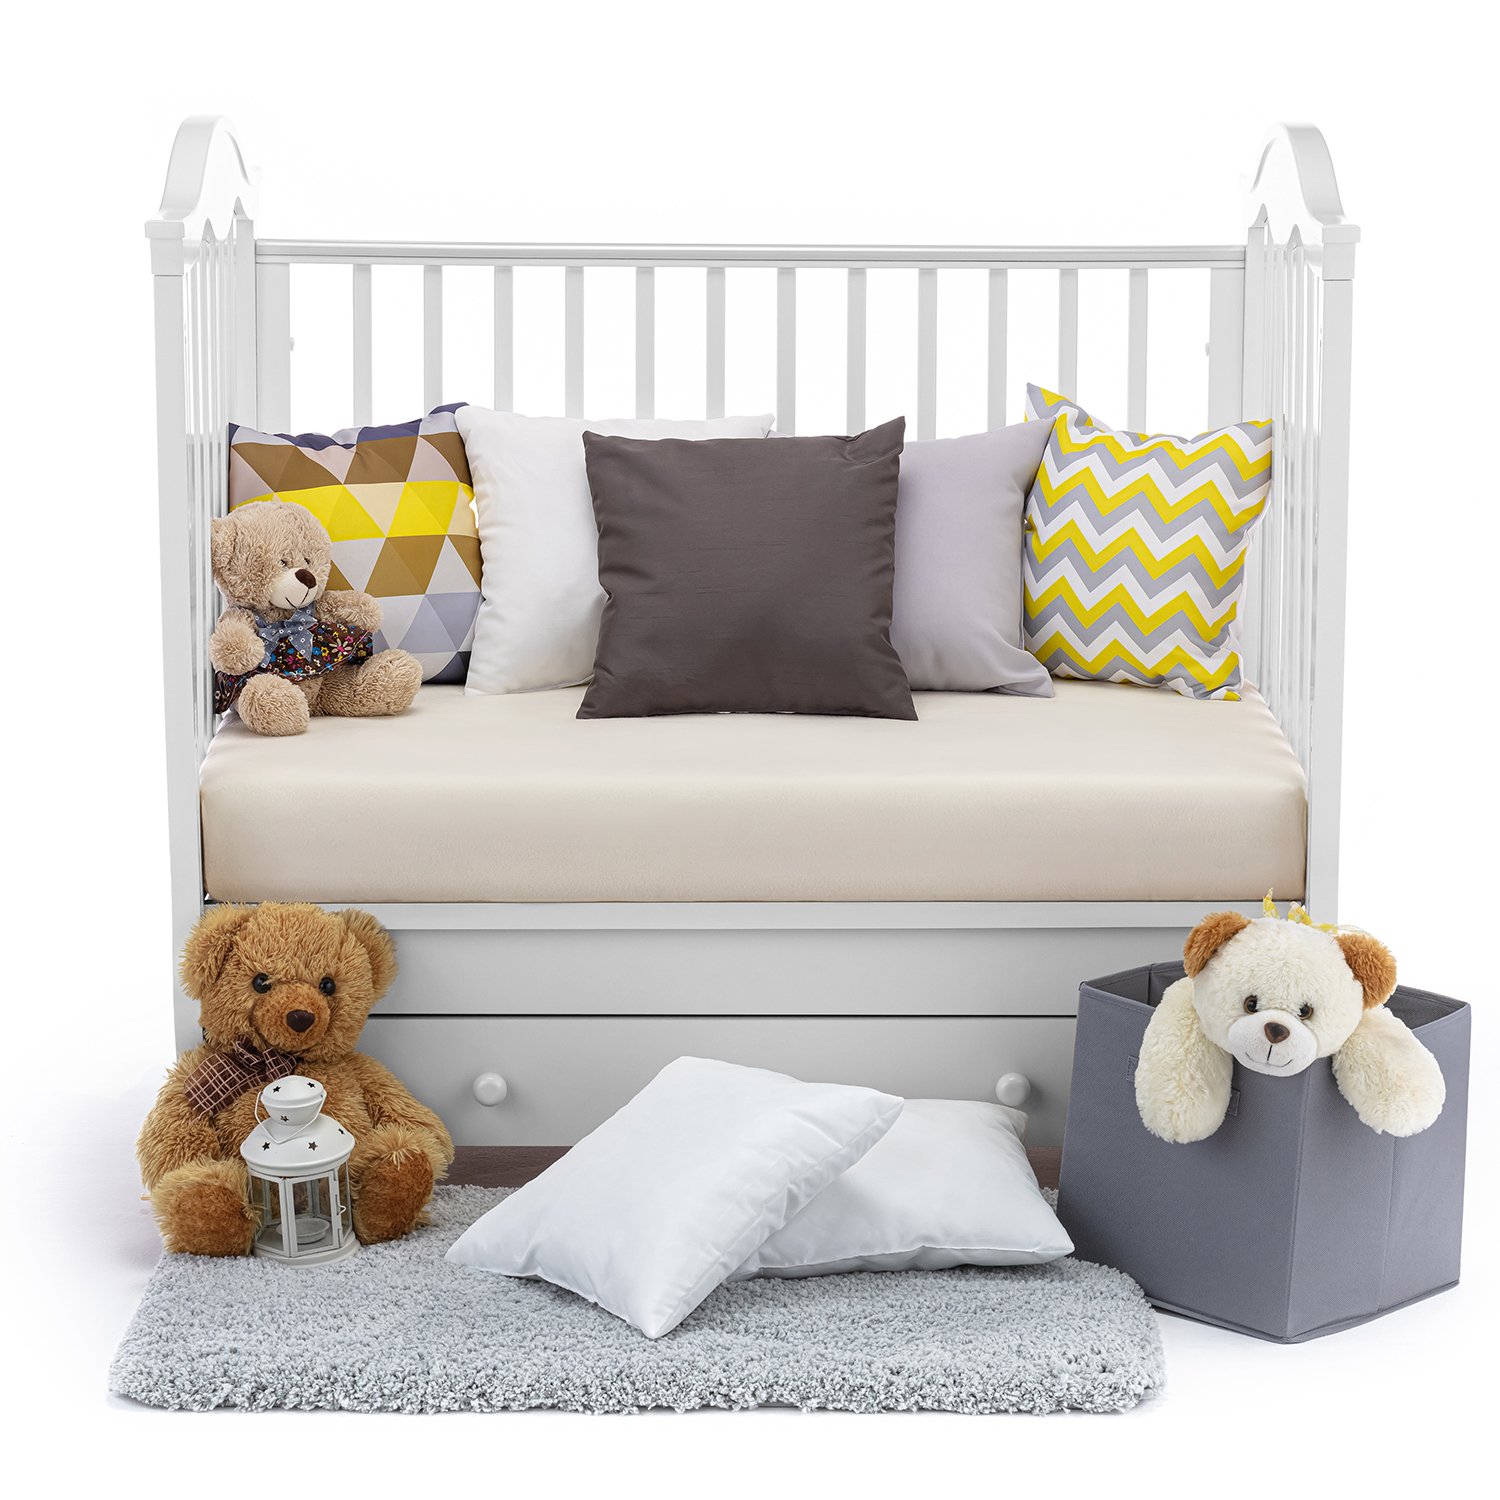 Детская кровать Nuovita Sorriso swing поперечный, цвет - Bianco/Белый  